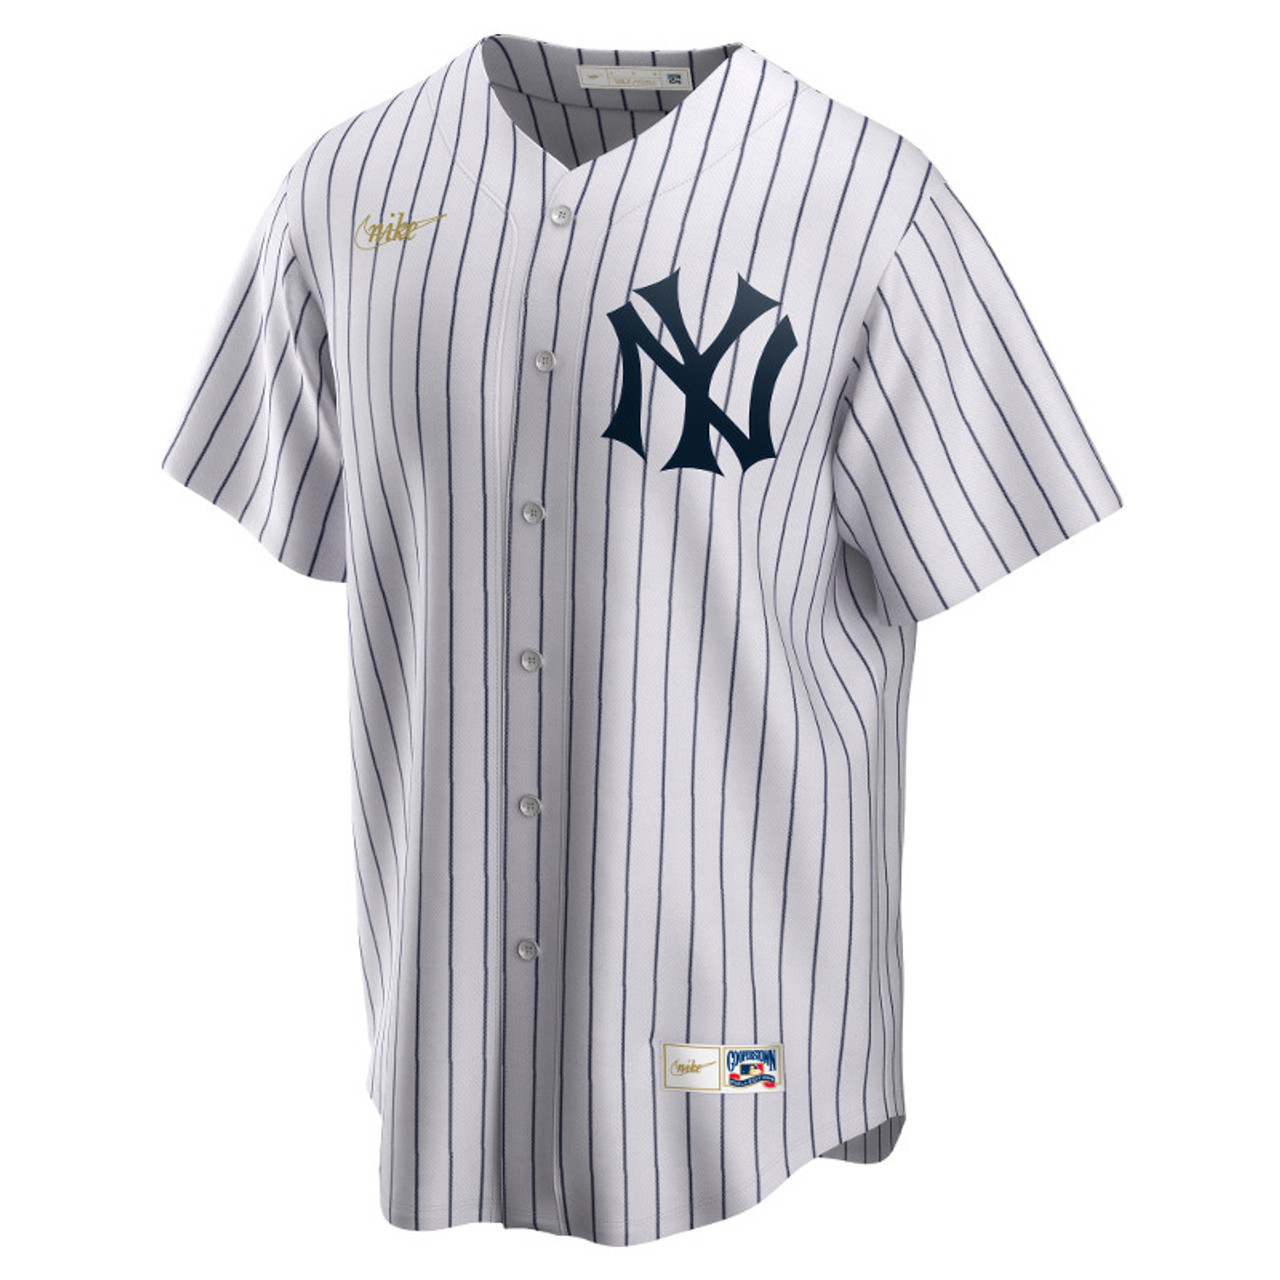 Men’s New York Yankees Gleyber Torres Navy Cooperstown Collection Mesh Batting Practice Jersey